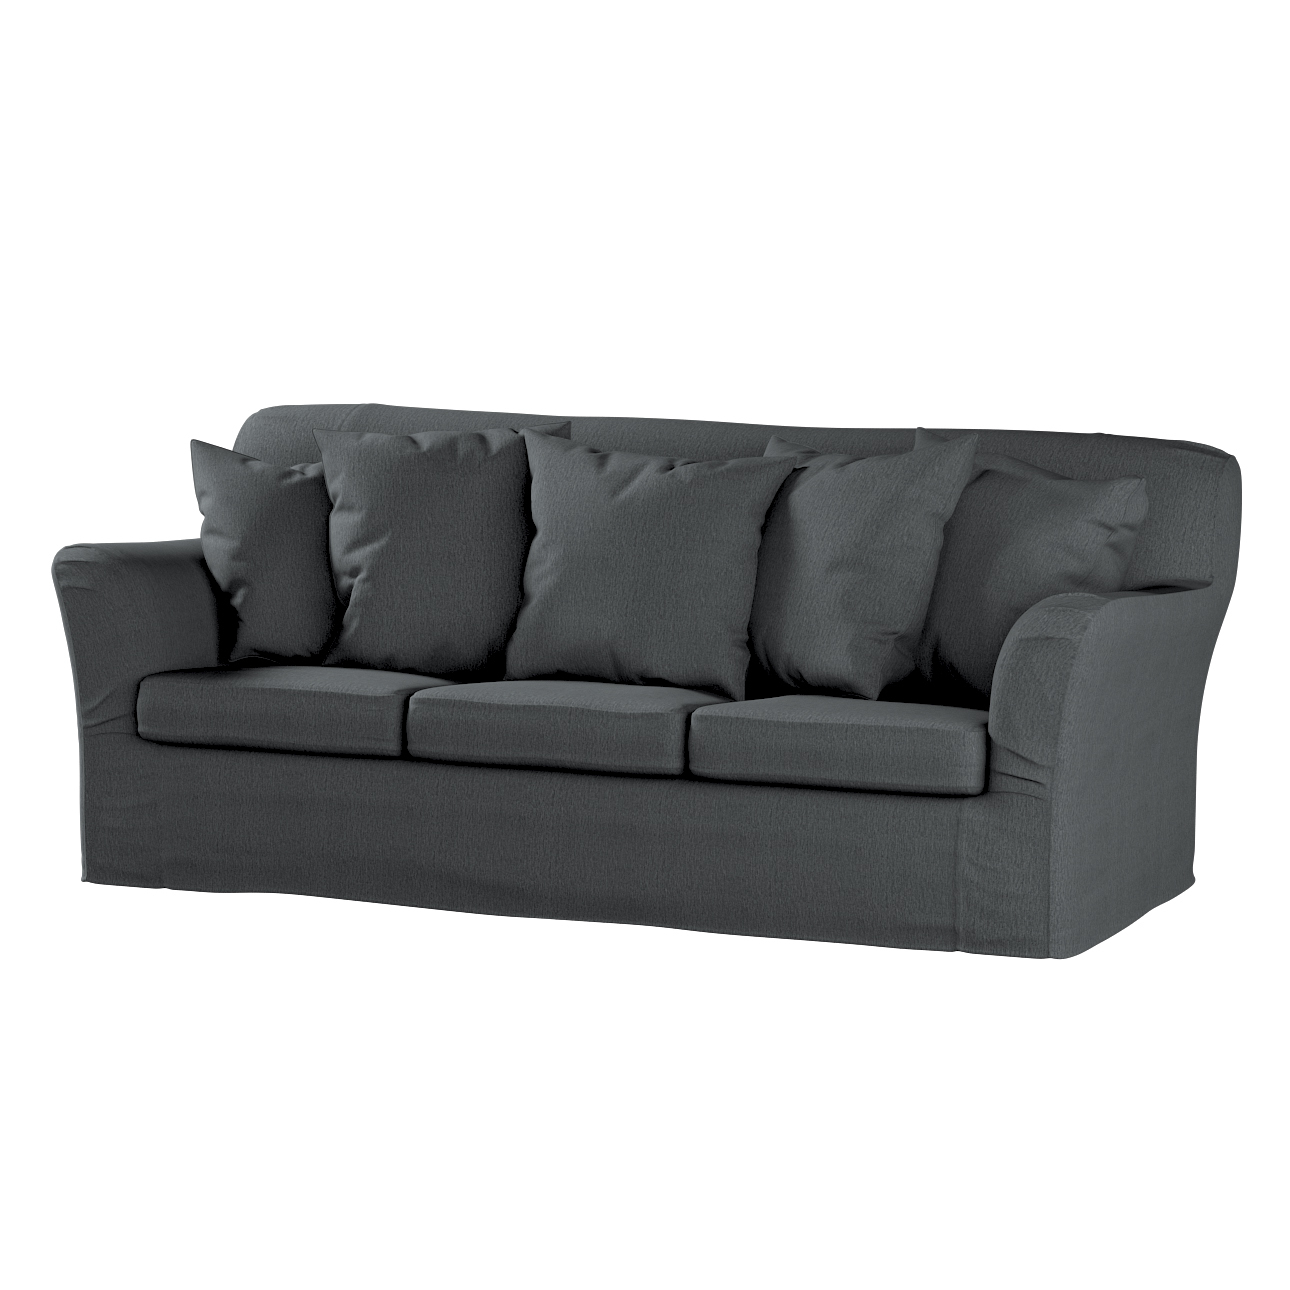 Bezug für Tomelilla 3-Sitzer Sofa nicht ausklappbar, stahlgrau, Sofahusse, günstig online kaufen